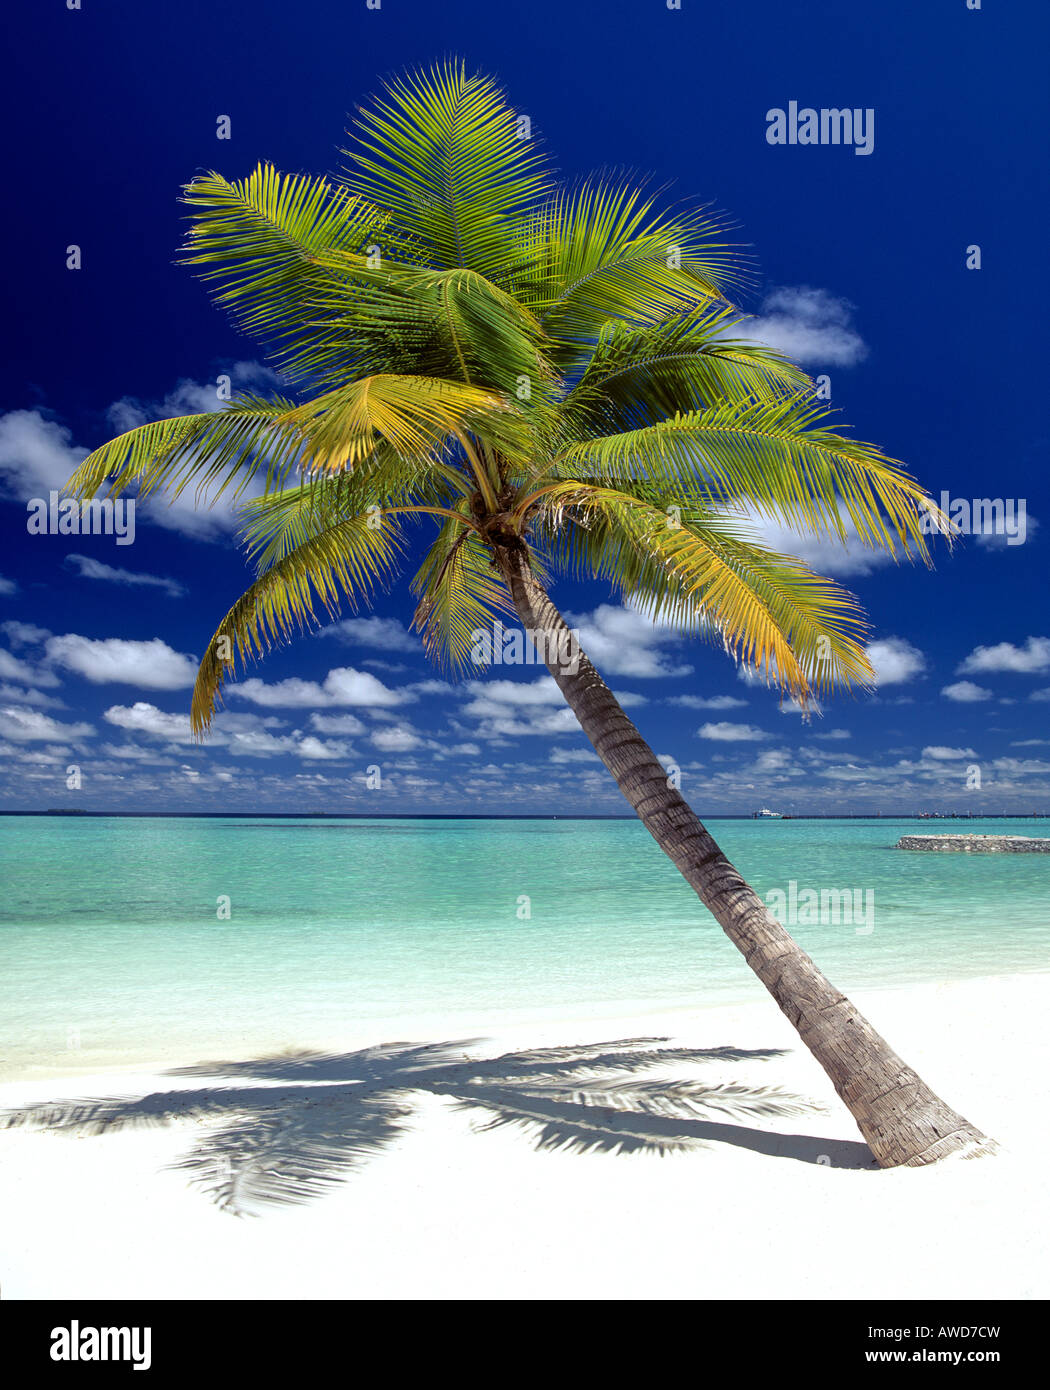 Palmier, plage et nuages, Maldives, océan Indien Banque D'Images